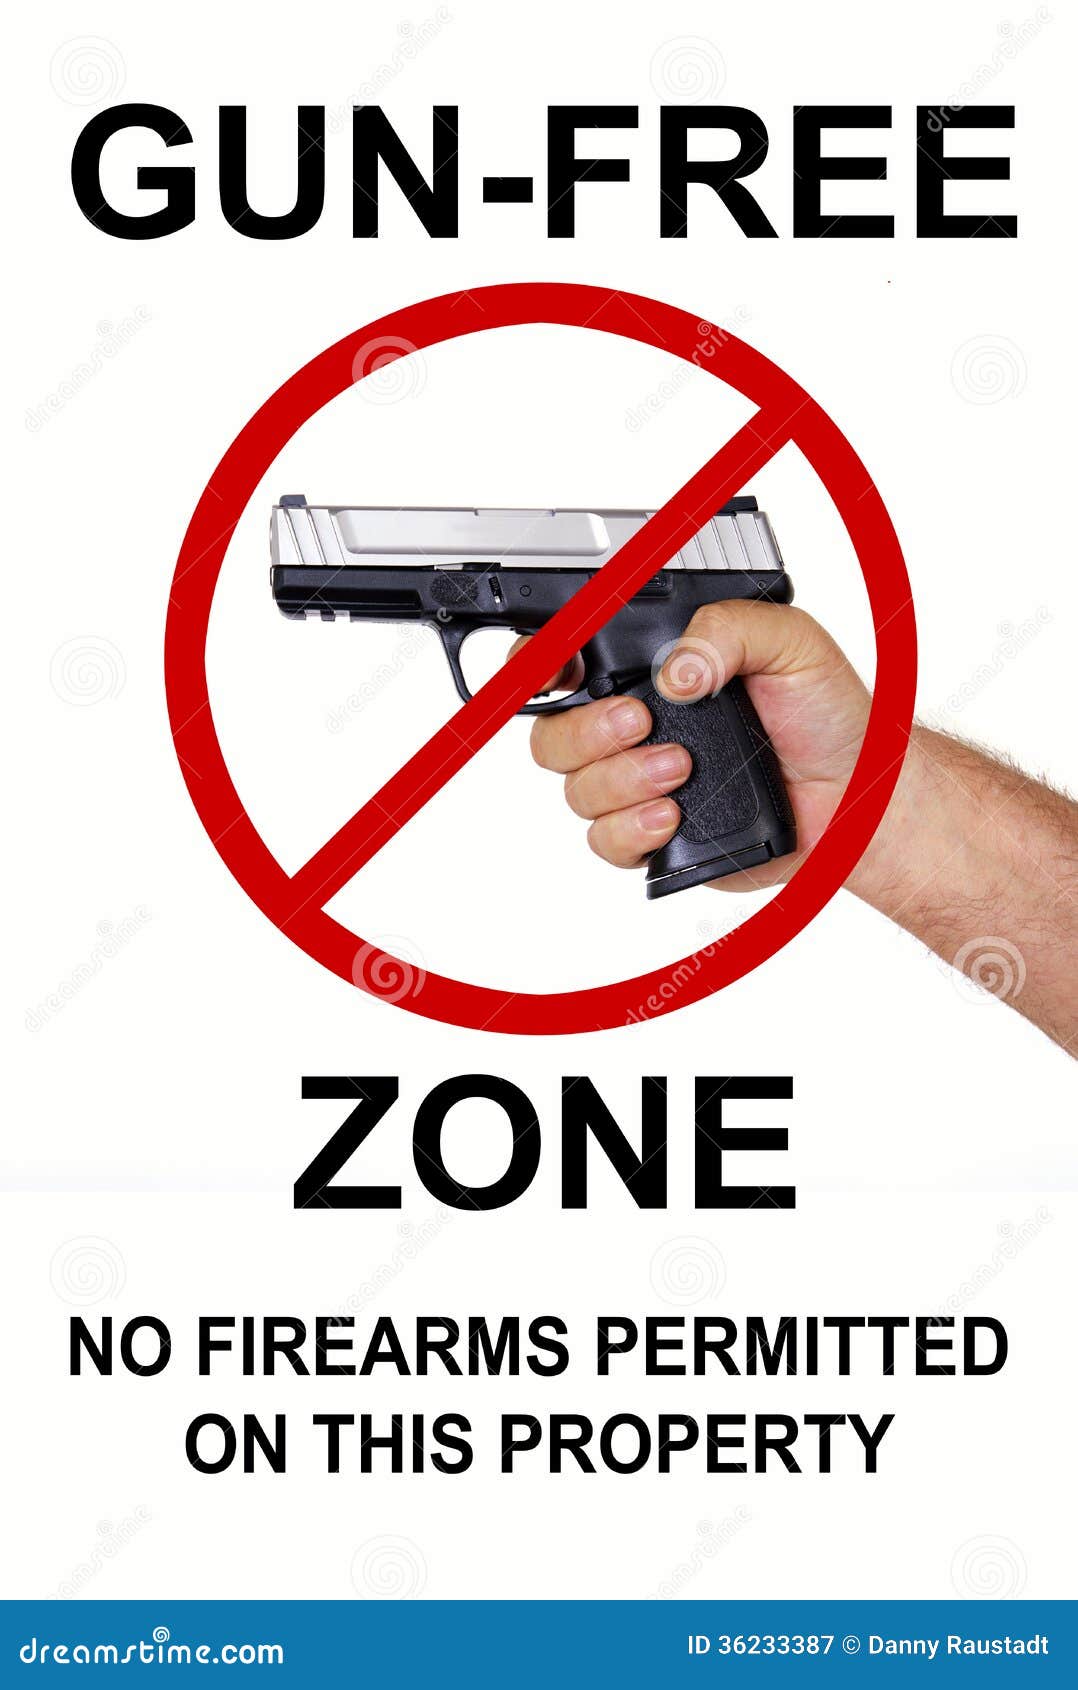 gun free zone, no firearms